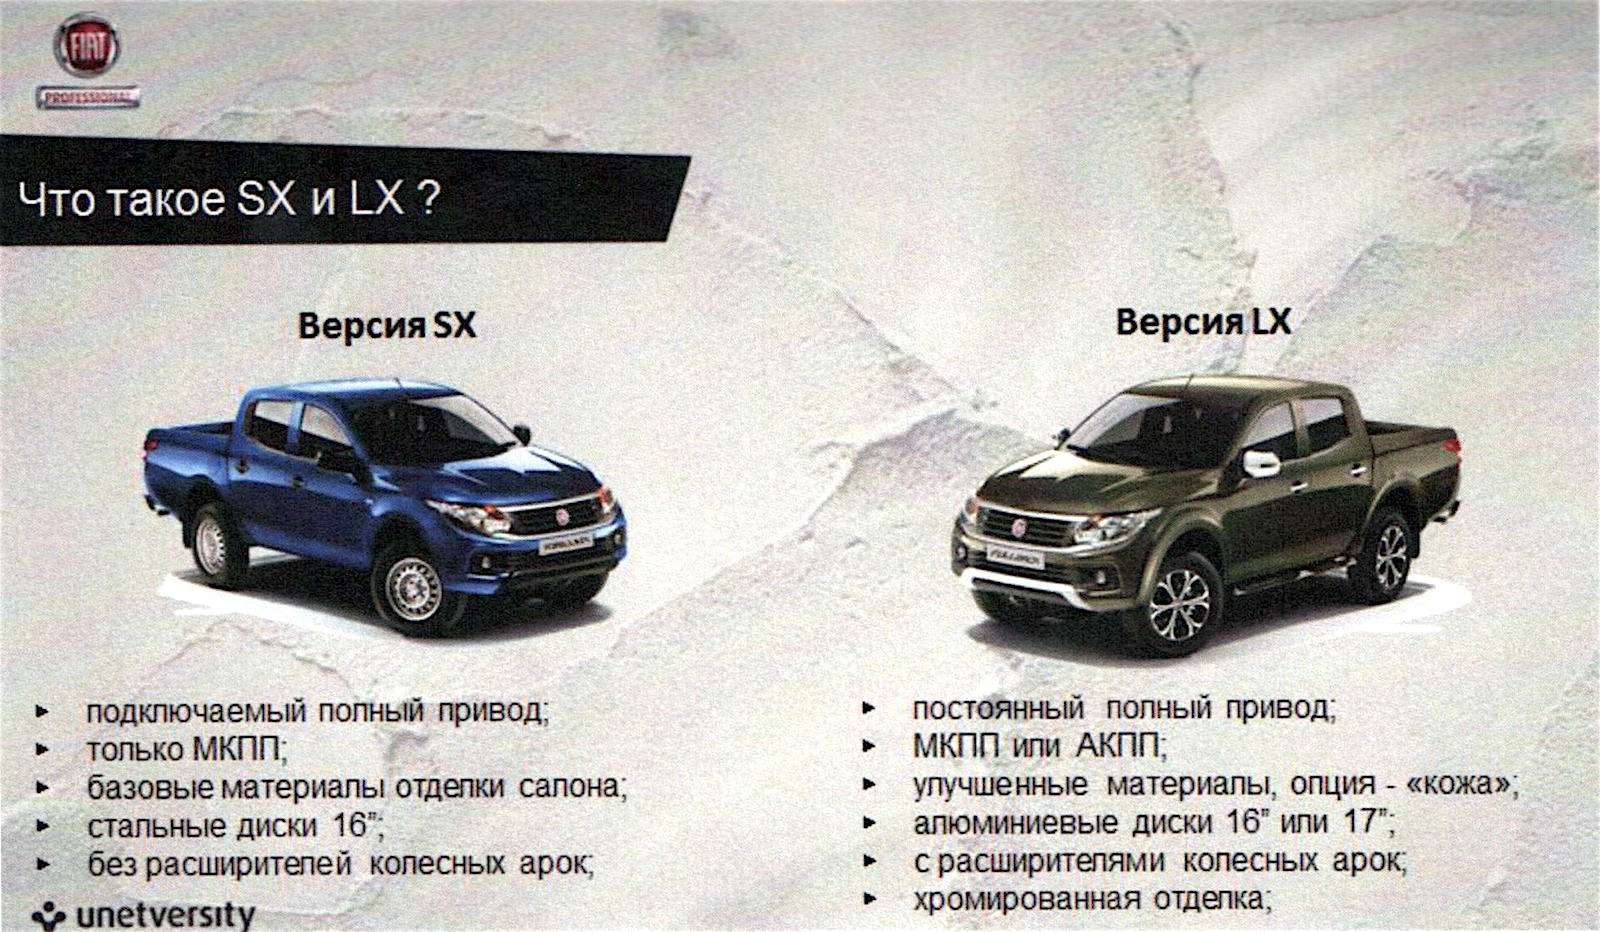 Пикап Fiat Fullback: старт продаж в России, цены и комплектации — фото 600178